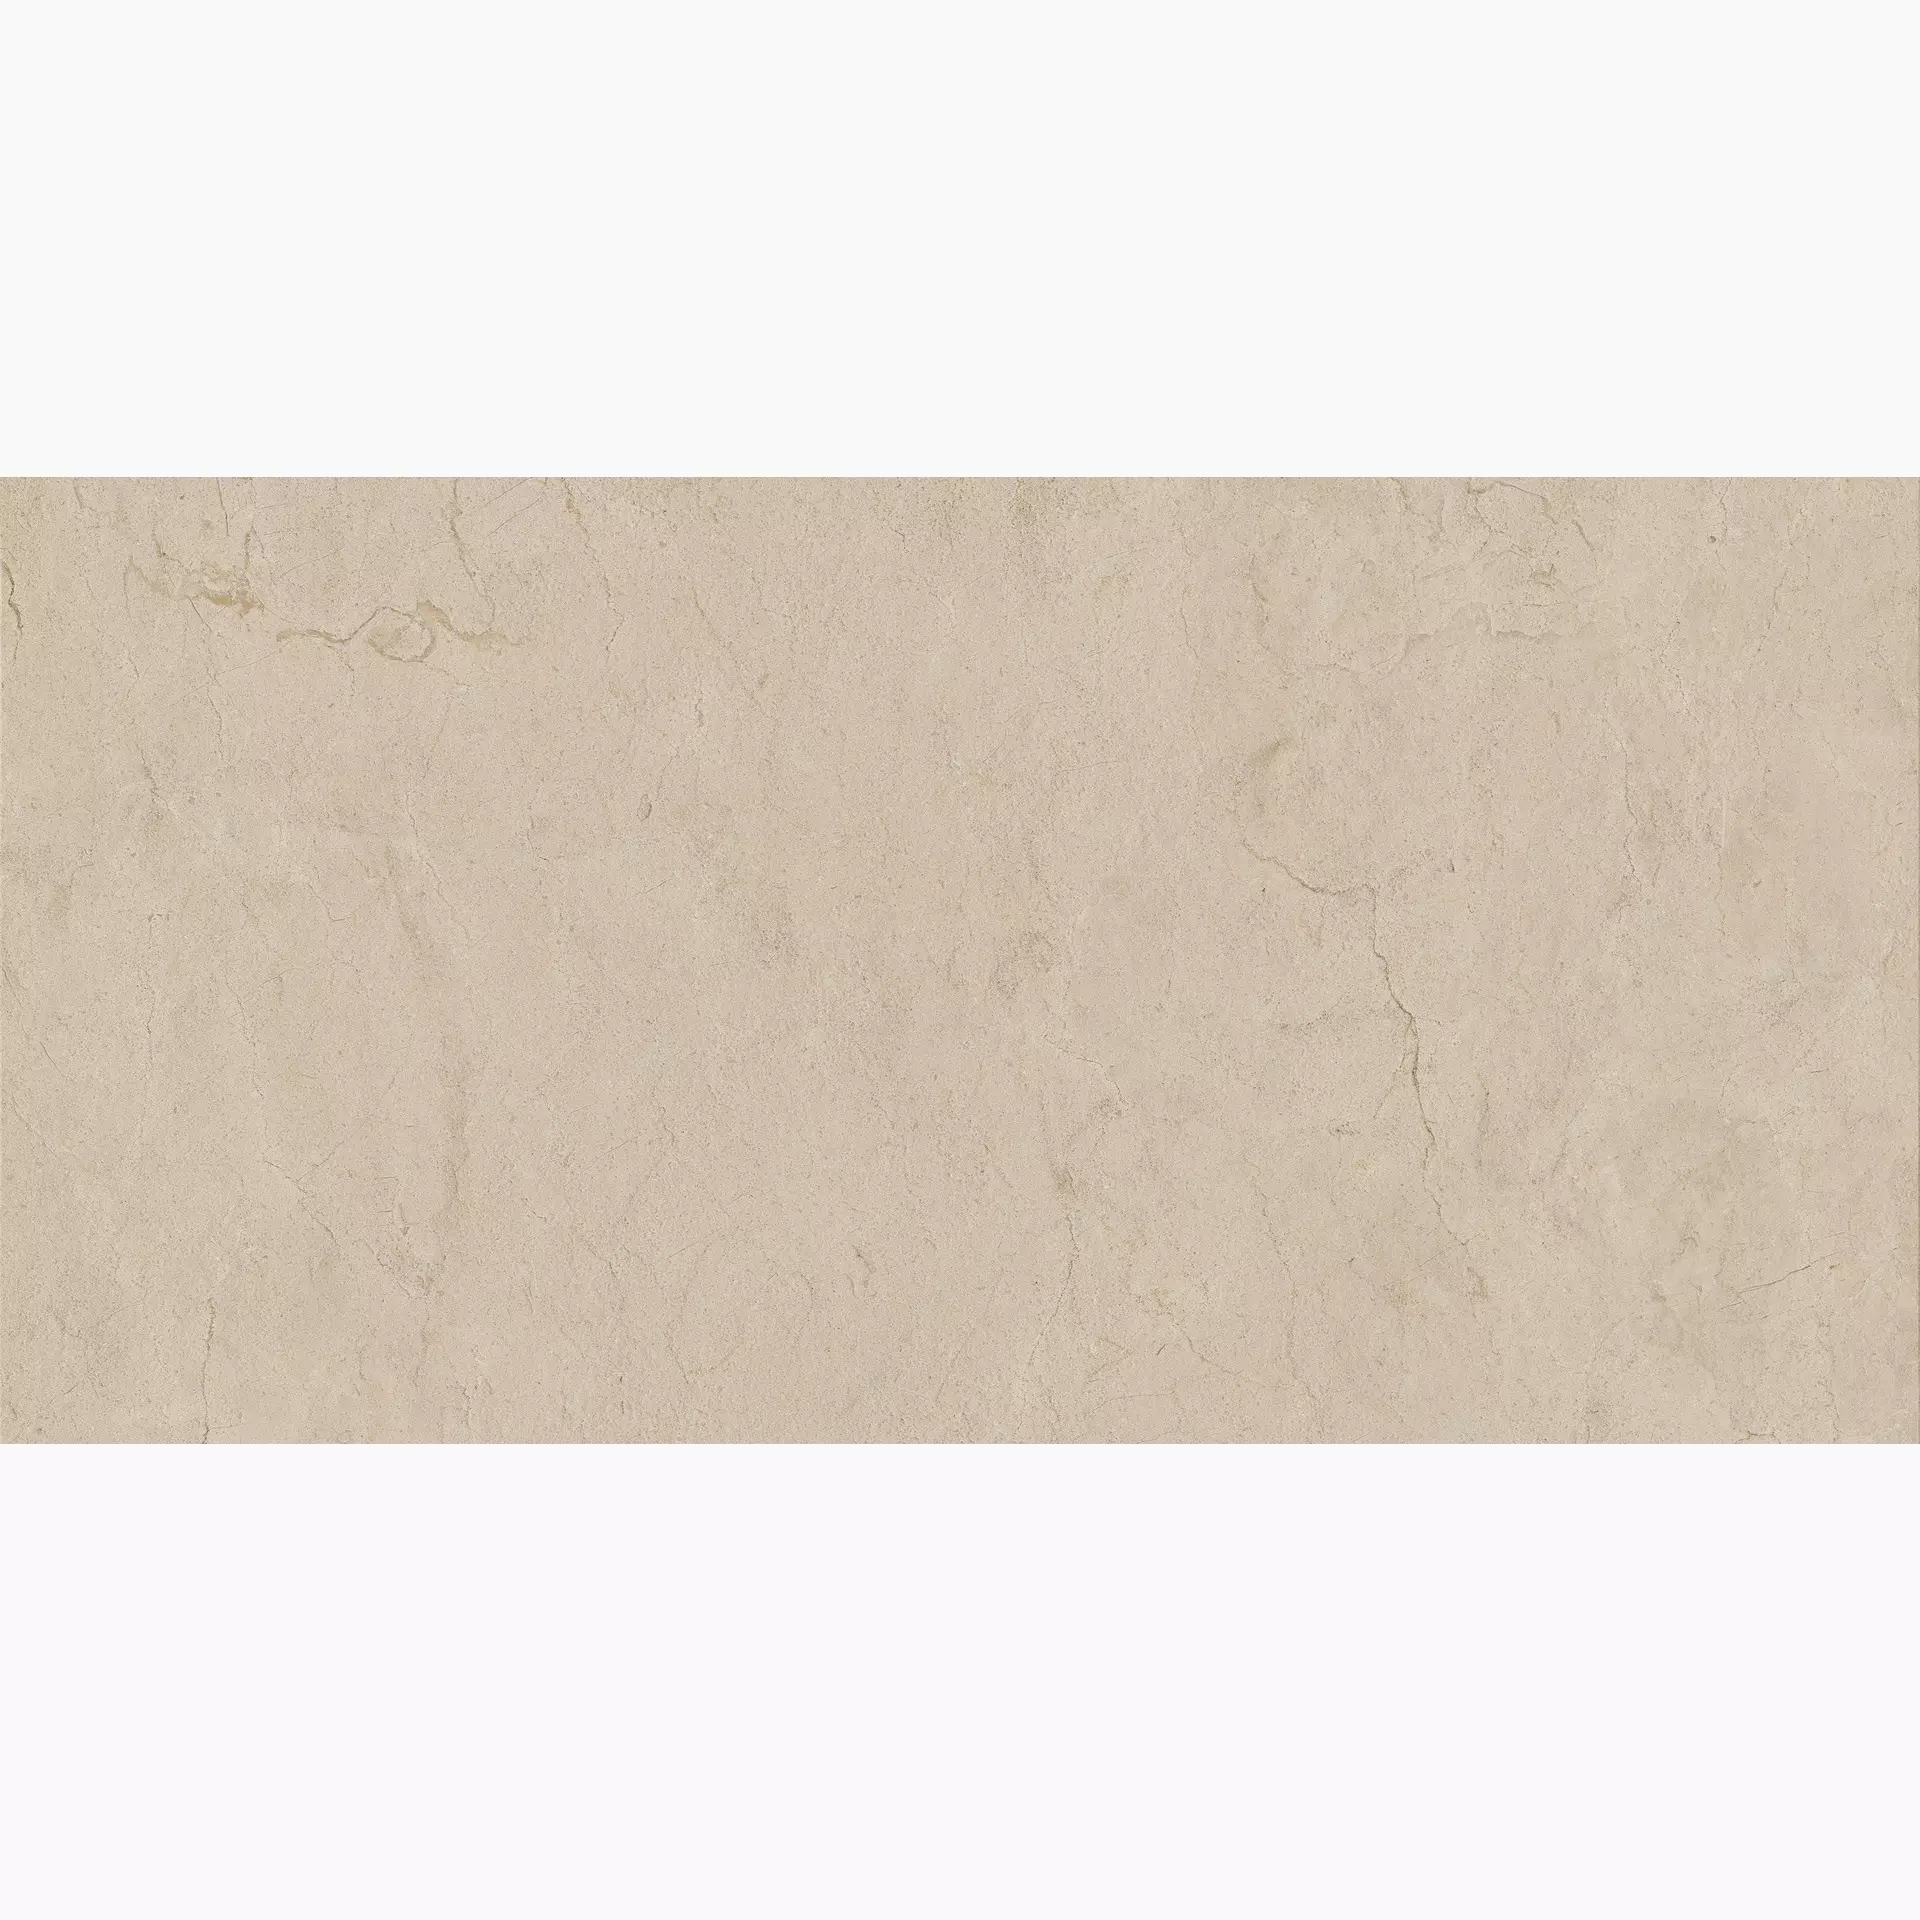 Marazzi Fabula Marfil Naturale – Matt MN43 60x120cm rectified 8,5mm